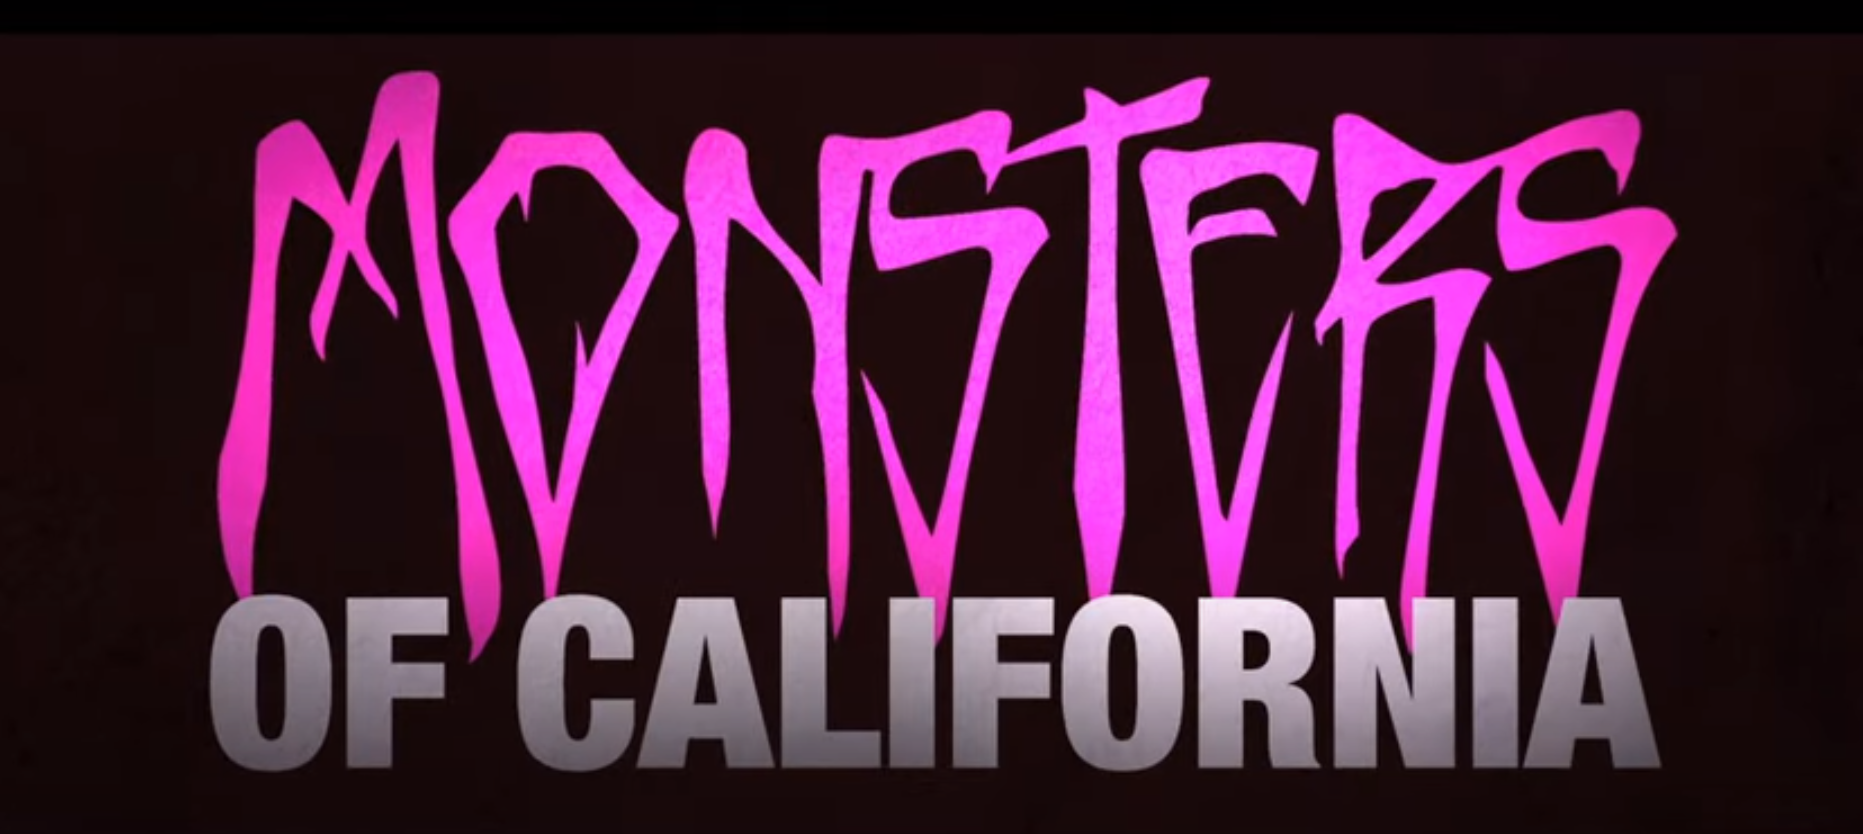 Here's a trailer for Tom DeLonge's 'Monsters of California